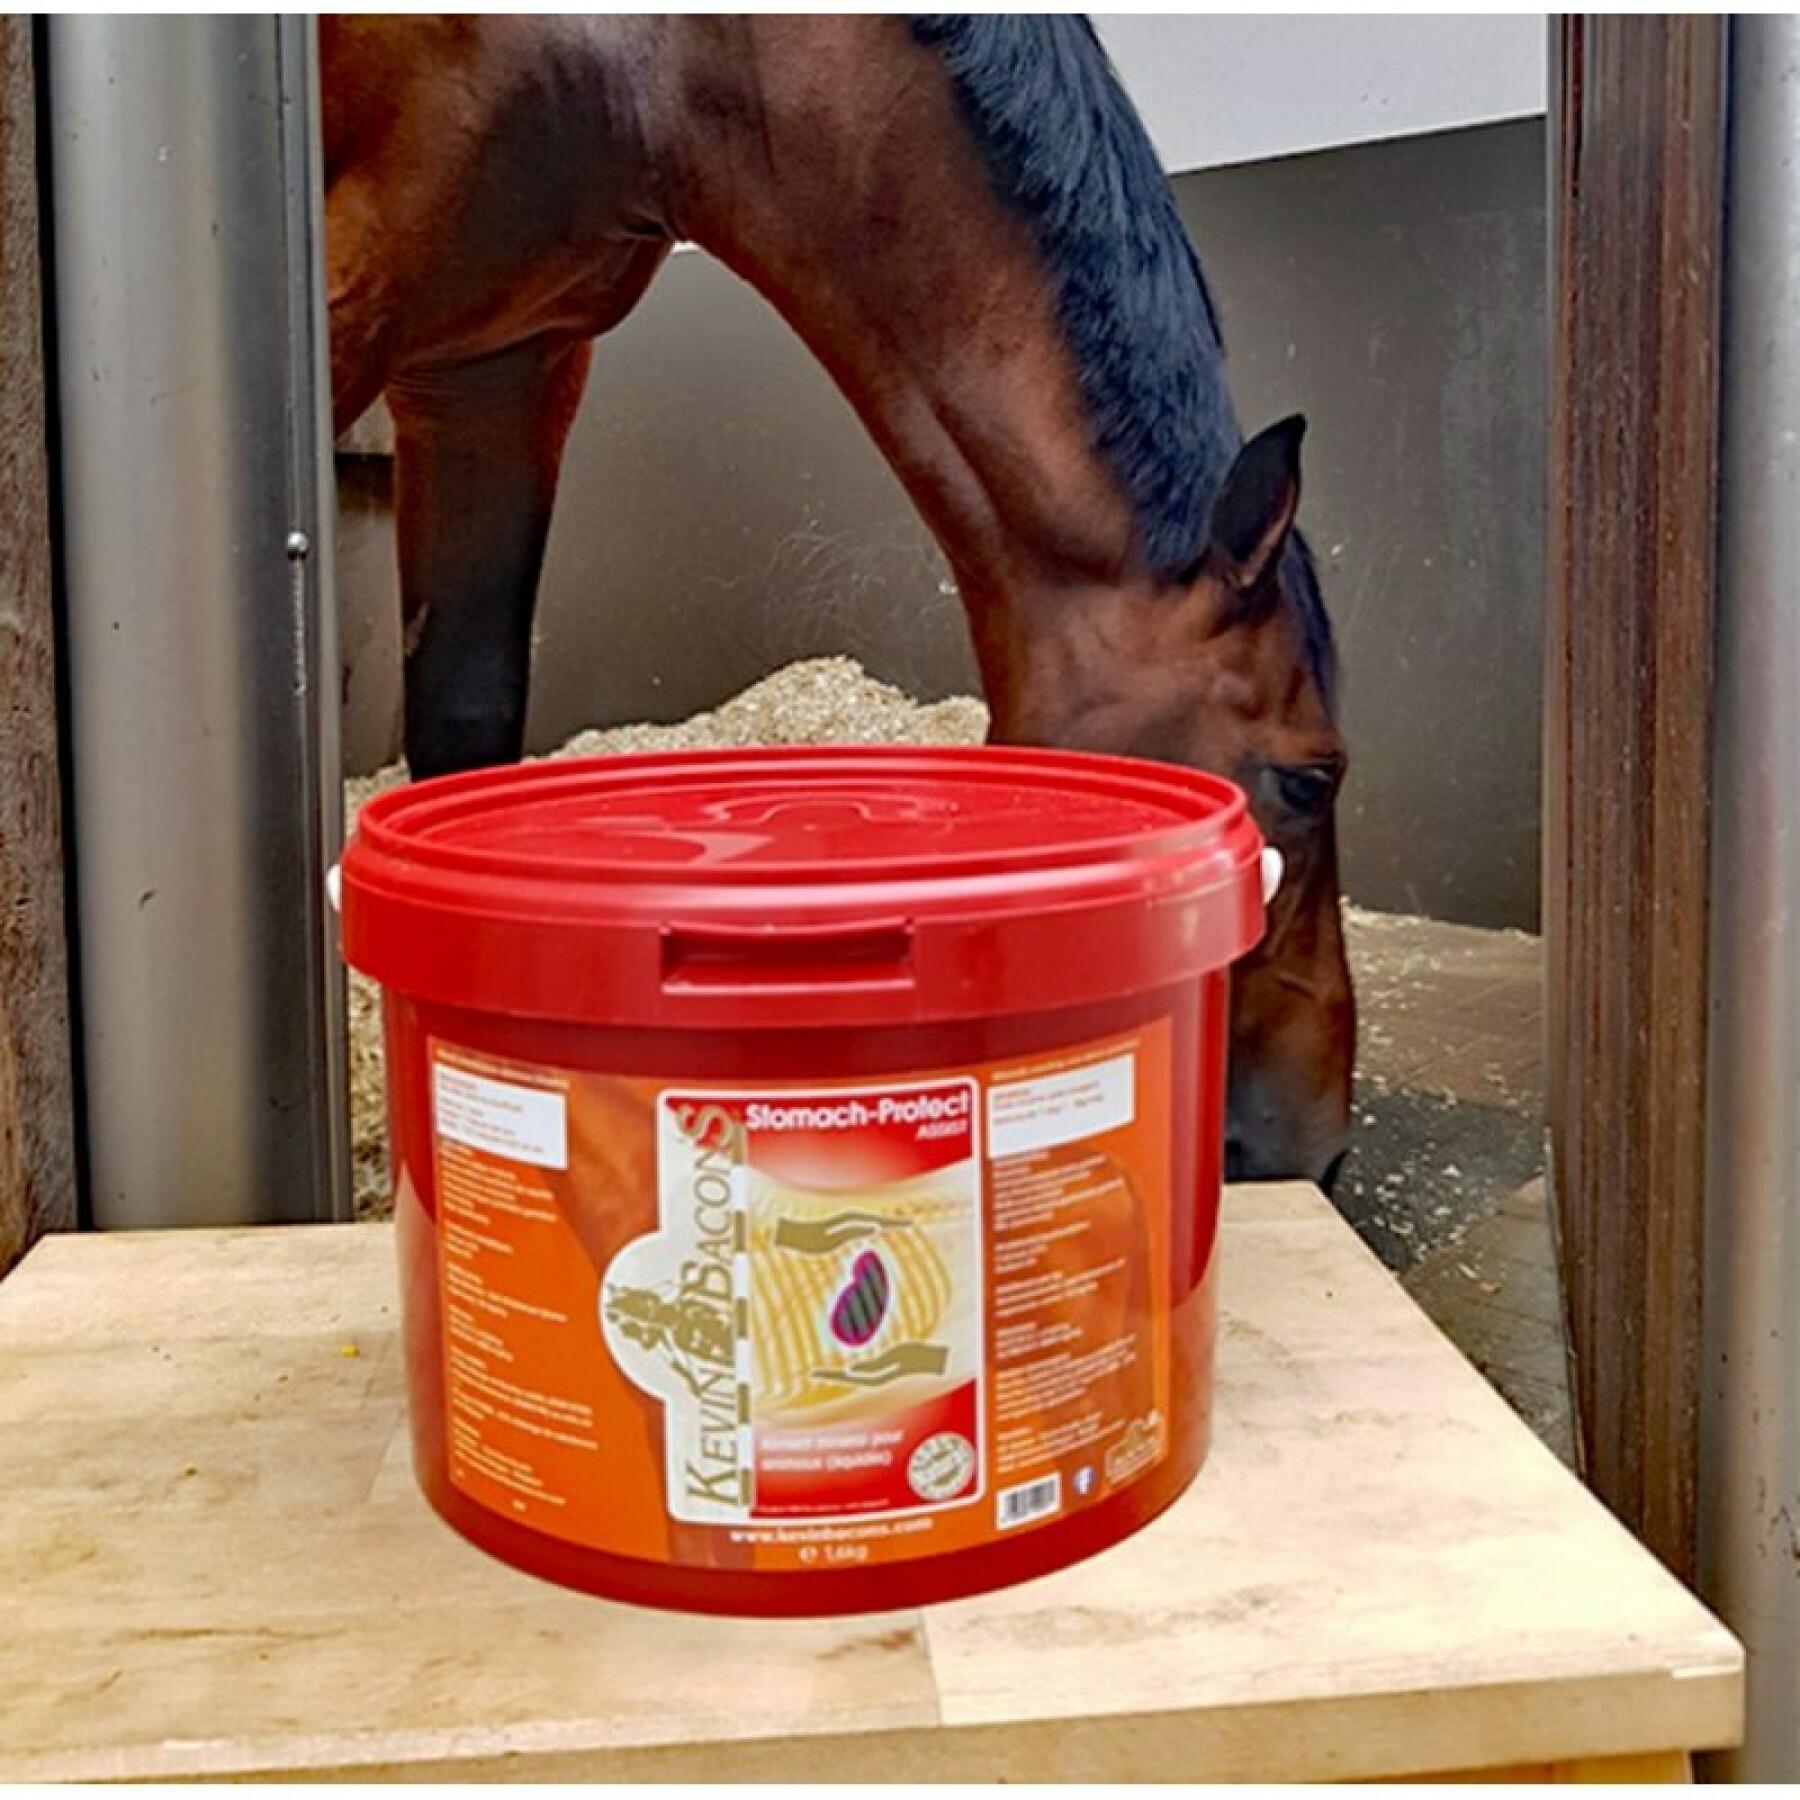 Suplemento nutricional digestivo para caballo Kevin Bacon's